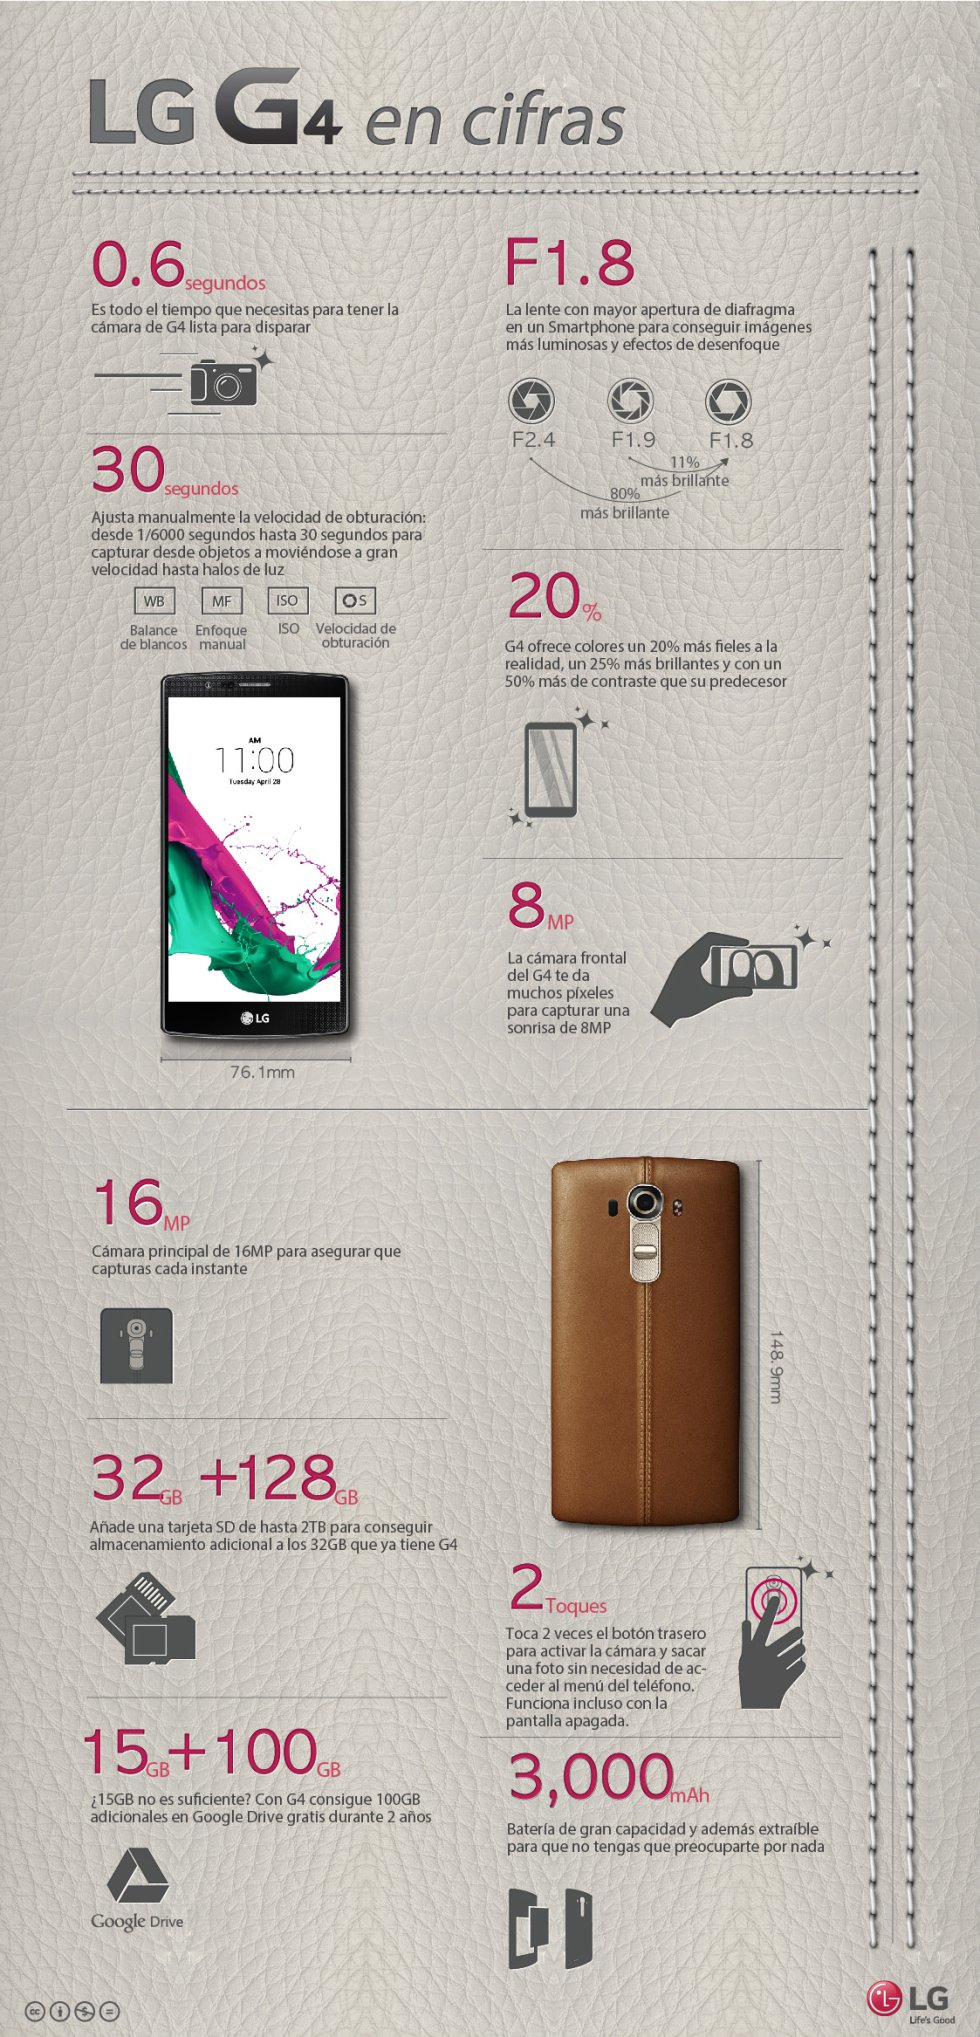 LG G4: El Smartphone más ambicioso hasta la fecha